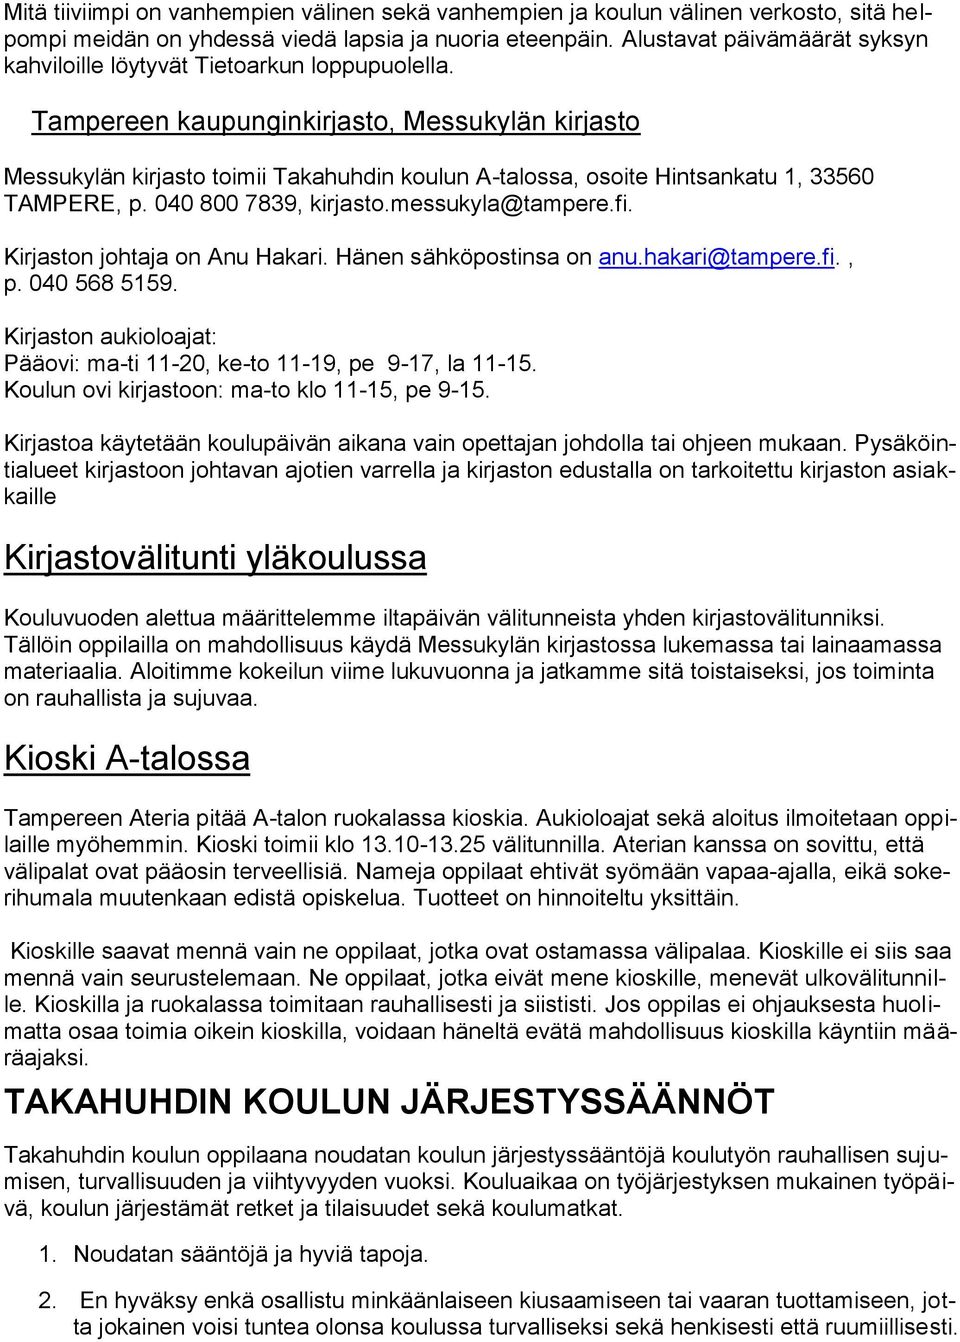 Tampereen kaupunginkirjasto, Messukylän kirjasto Messukylän kirjasto toimii Takahuhdin koulun A-talossa, osoite Hintsankatu 1, 33560 TAMPERE, p. 040 800 7839, kirjasto.messukyla@tampere.fi.